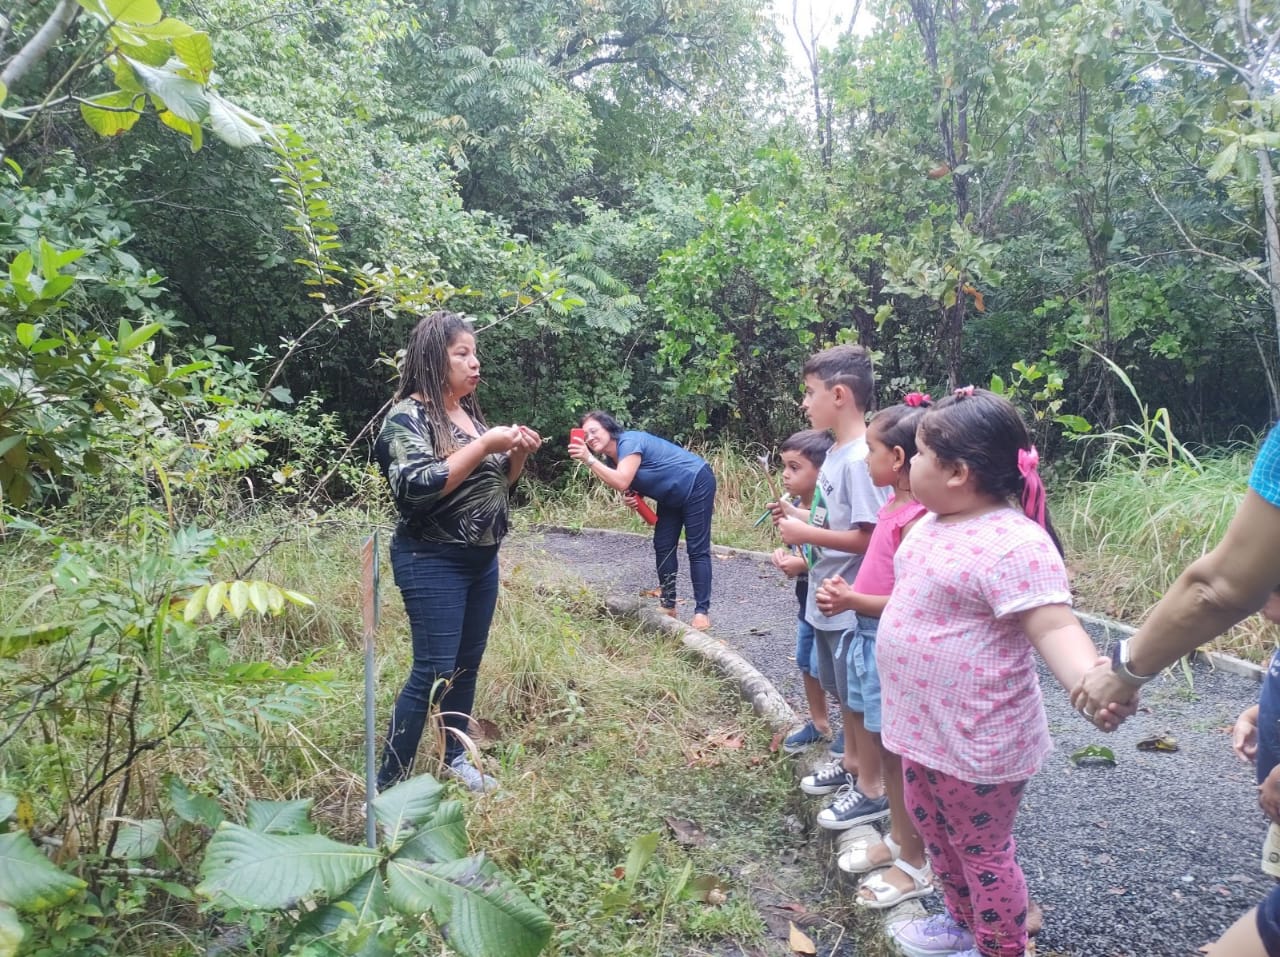  Imagem colorida ilustrativa mostra uma servidora conversando com as crianças, as mesmas estão de mãos dadas no limite da estrada de pedras, ao redor observa-se um fundo com diversos tipos de vegetação.